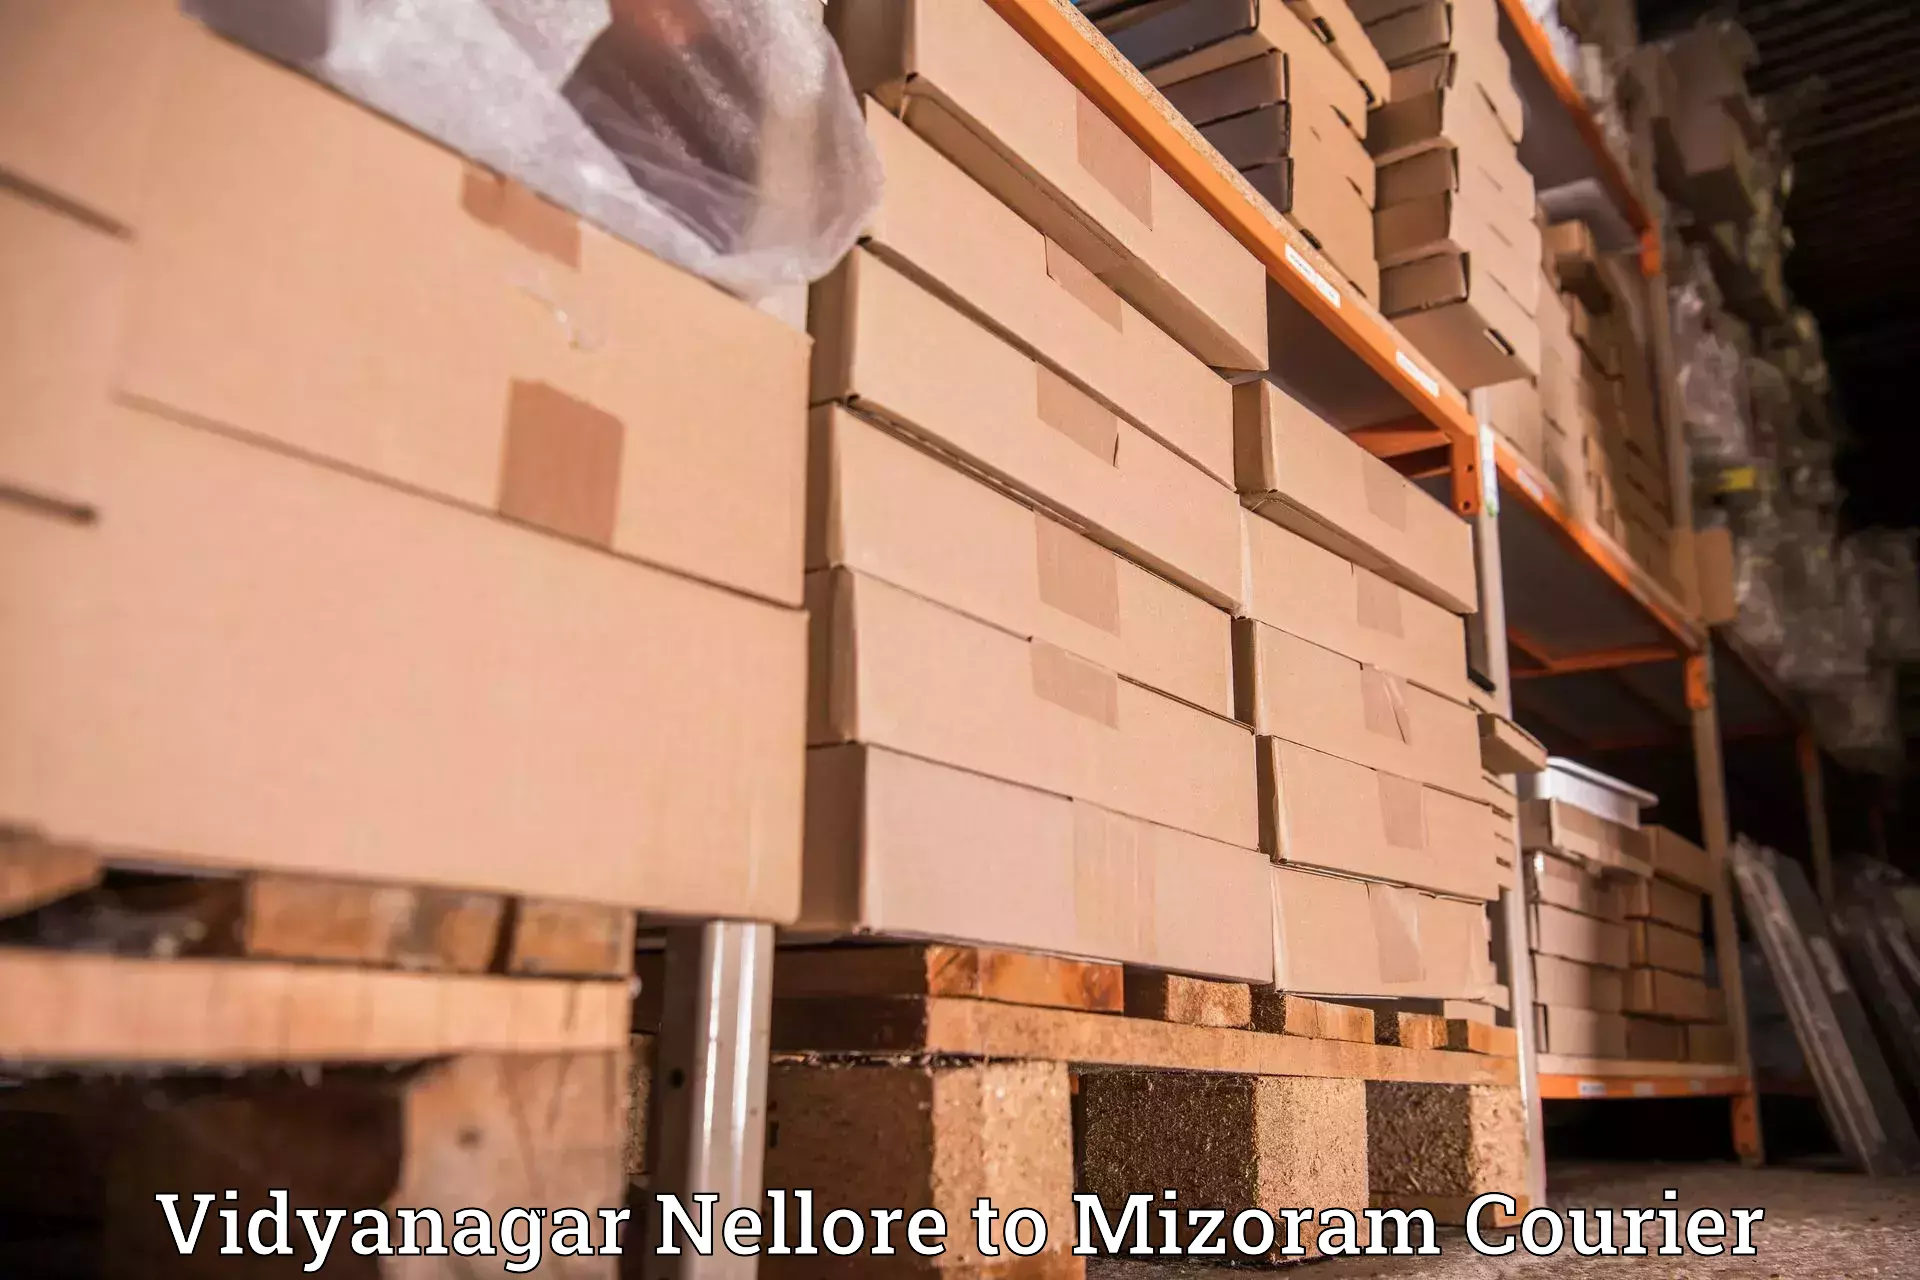 Reliable delivery network Vidyanagar Nellore to Saitual